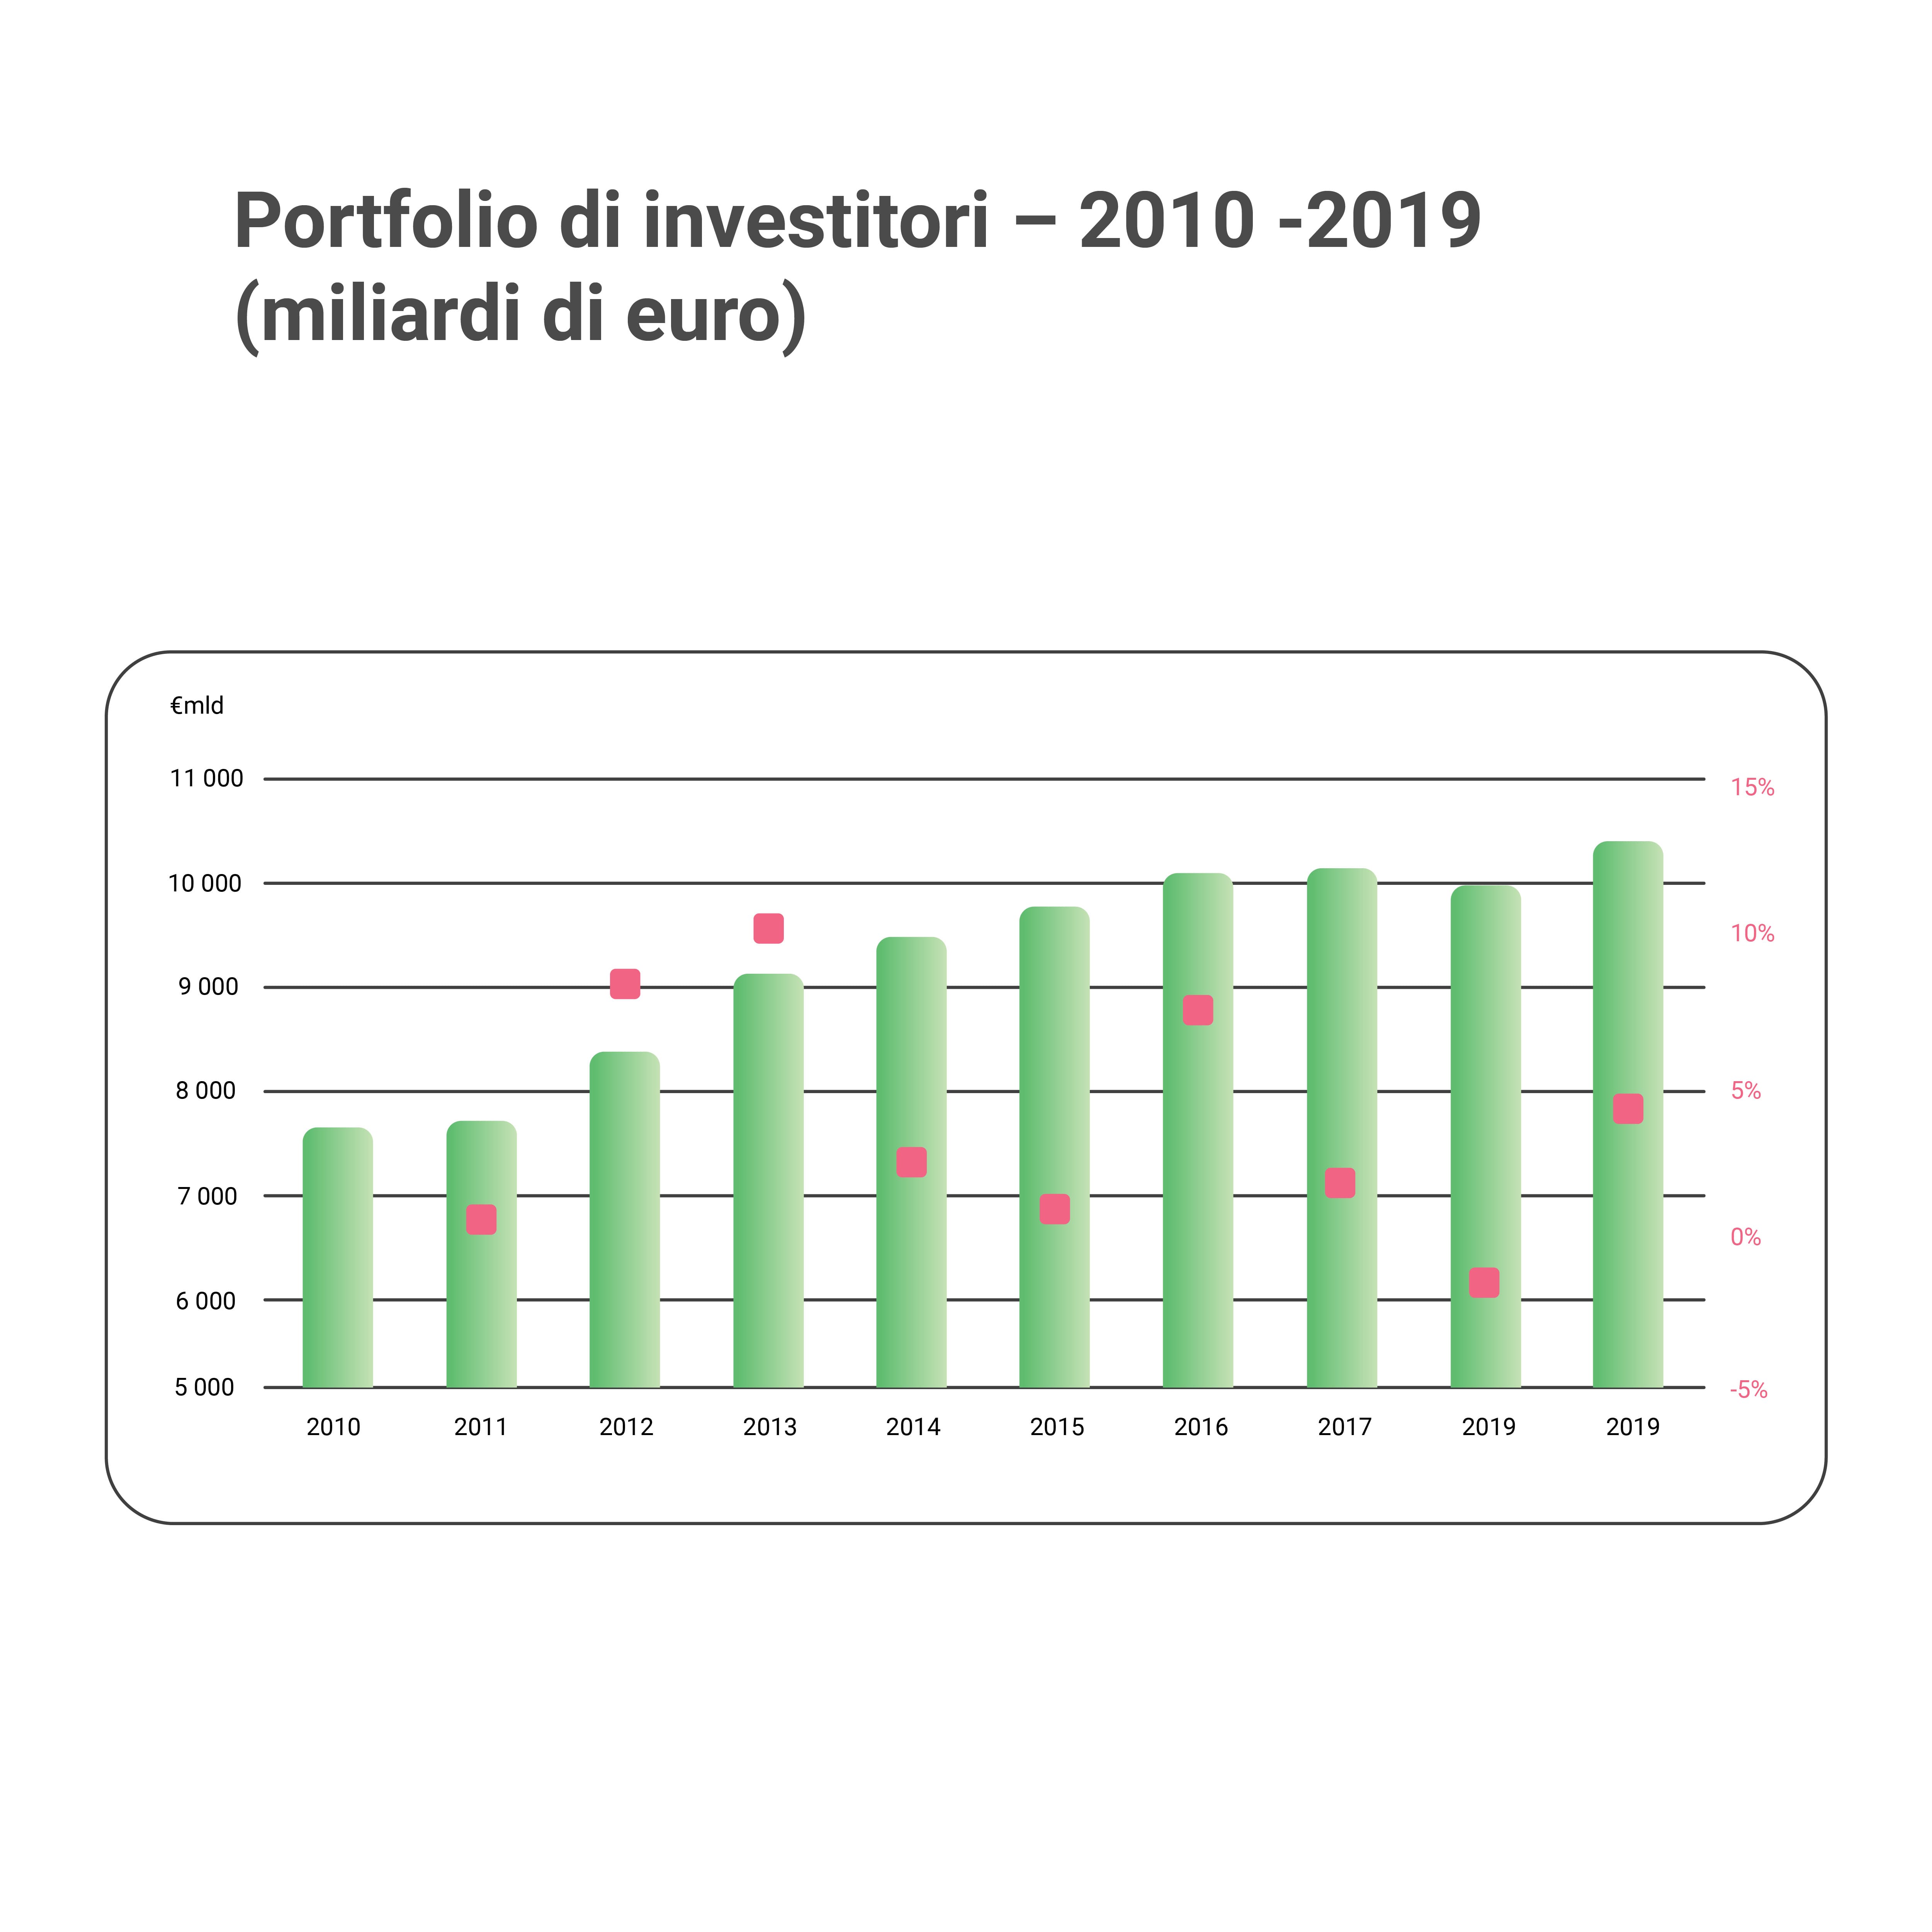 Il portfolio di investitori insurtech in europa